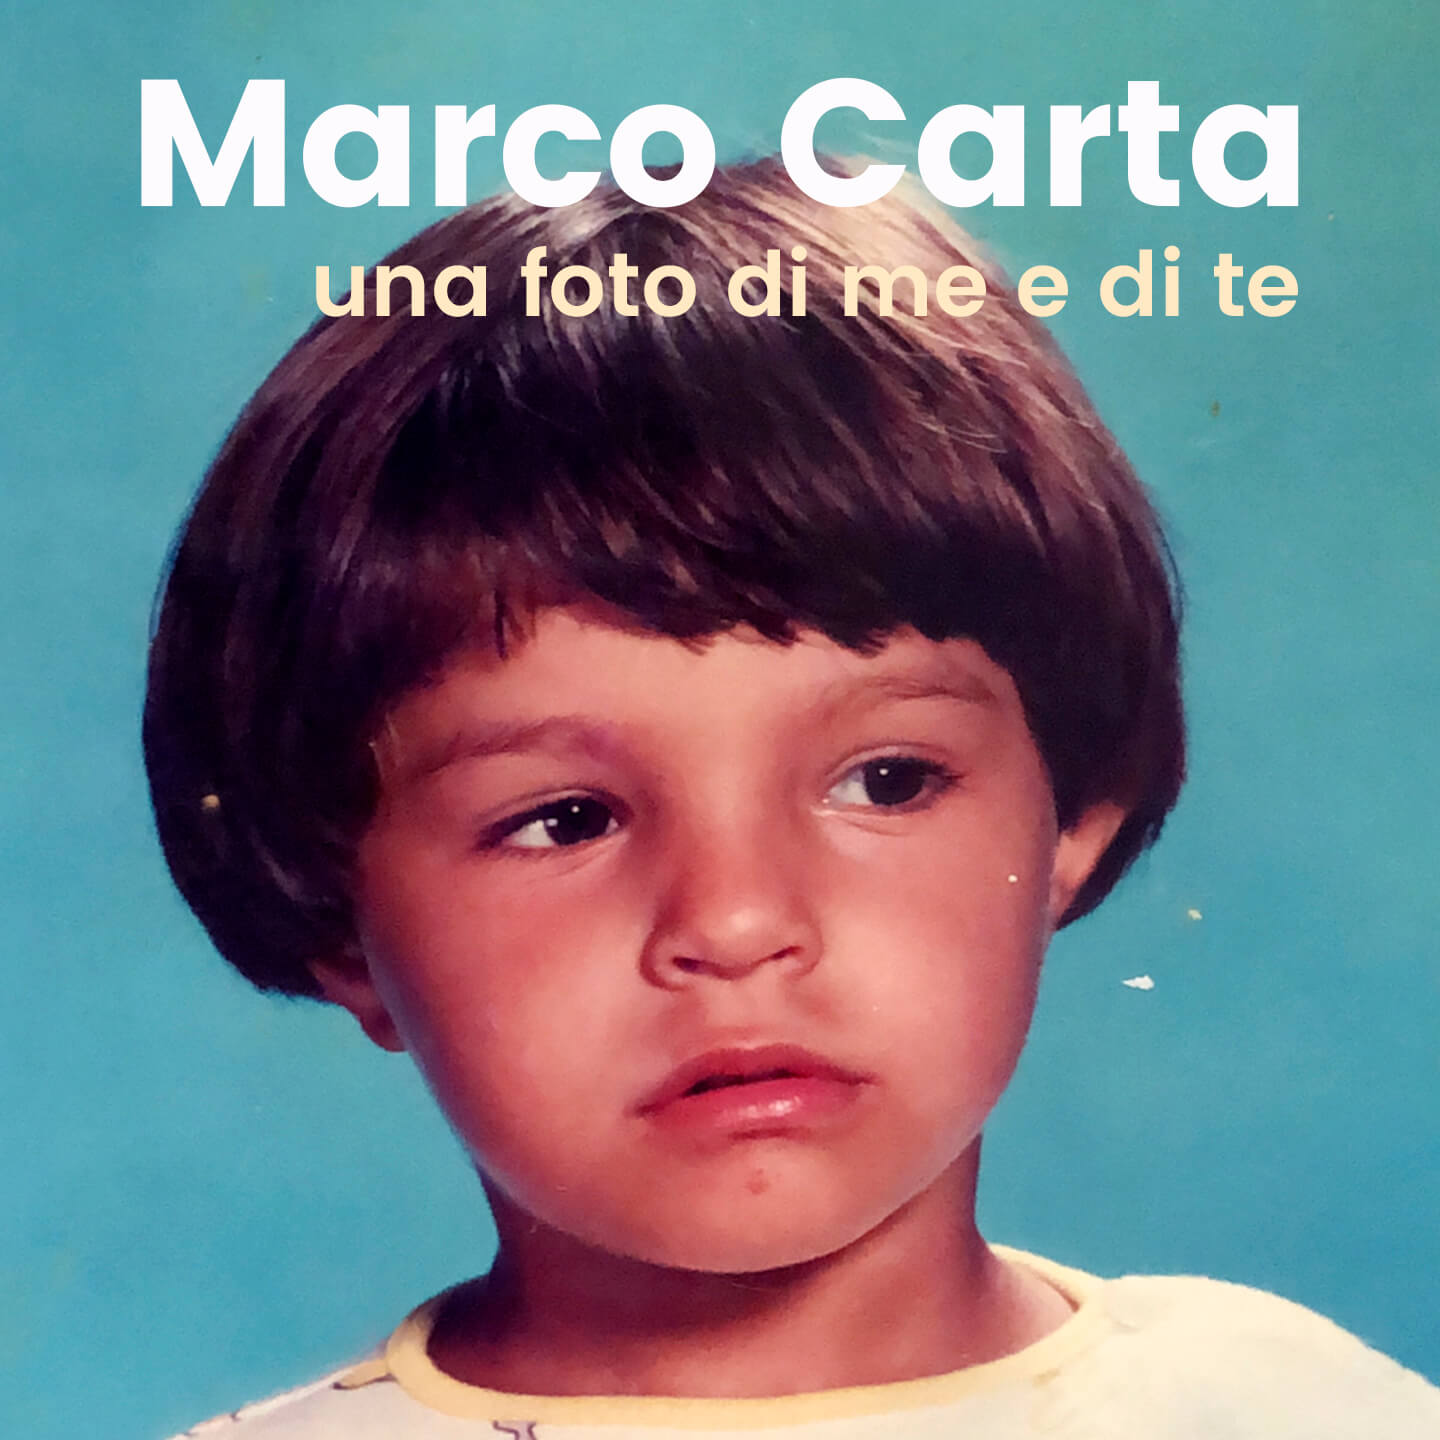 Marco Carta: "Vi svelo perché ho scelto di fare coming out" - Cover Una foto di me e di te - Gay.it